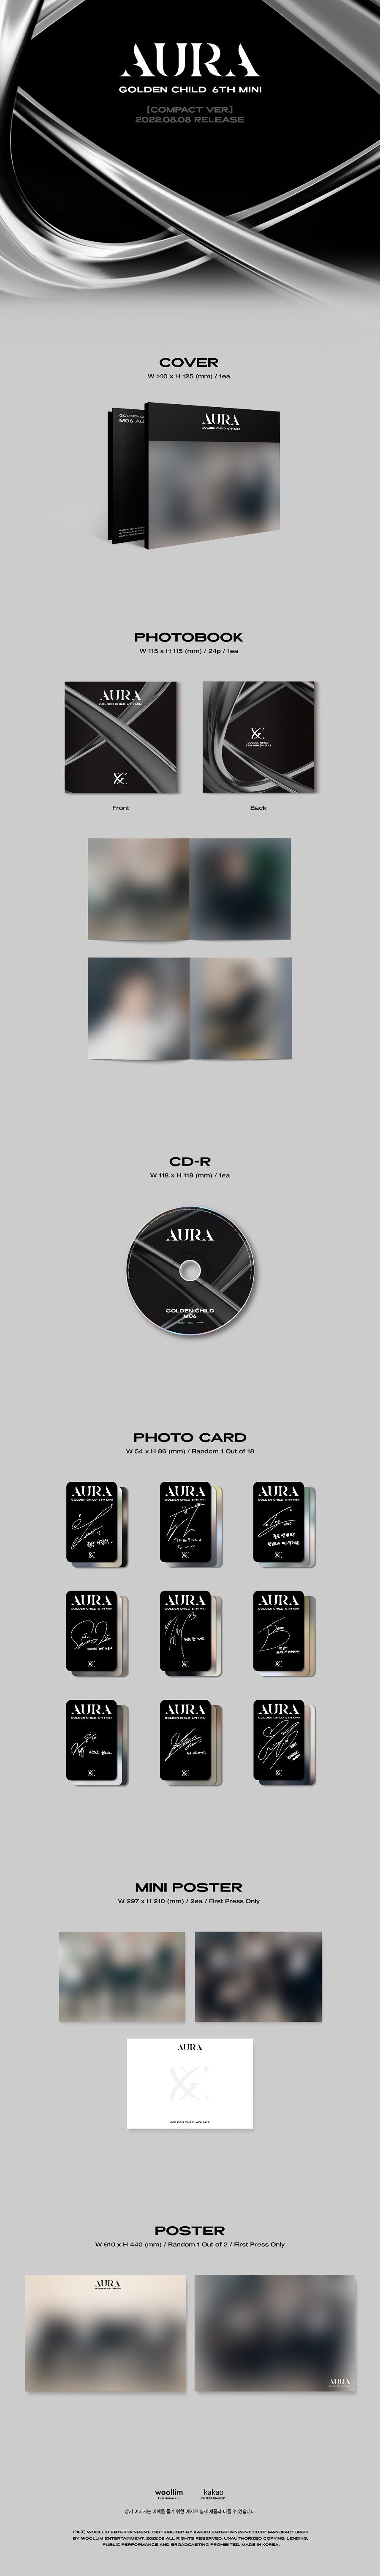 Golden Child Mini Album Vol. 6 - AURA (Compact Version)